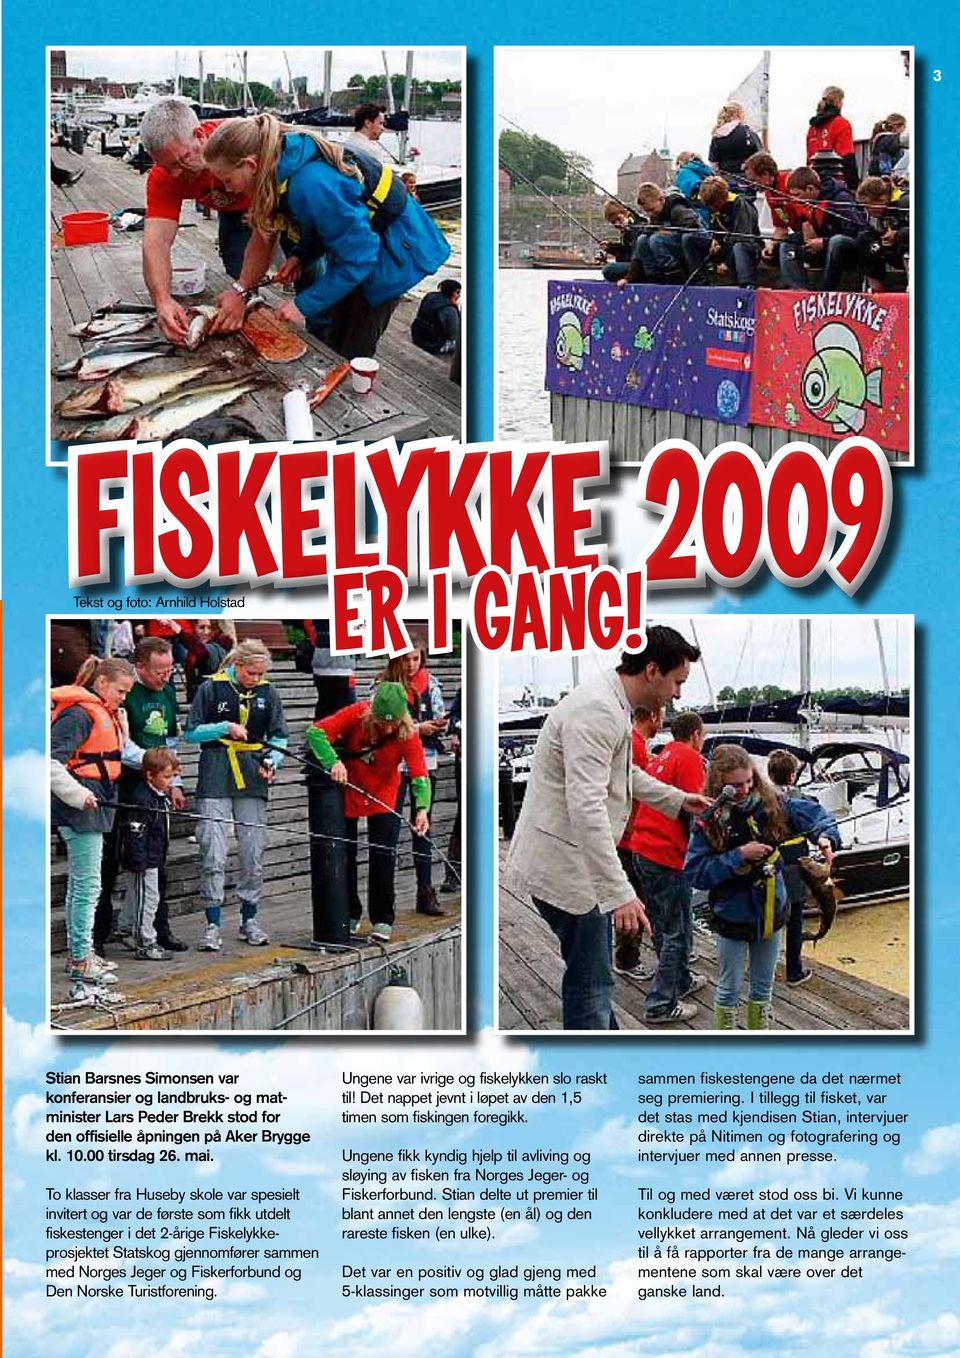 To klasser fra Huseby skole var spesielt invitert og var de første som fikk utdelt fiskestenger i det 2-årige Fiskelykkeprosjektet Statskog gjennomfører sammen med Norges Jeger og Fiskerforbund og